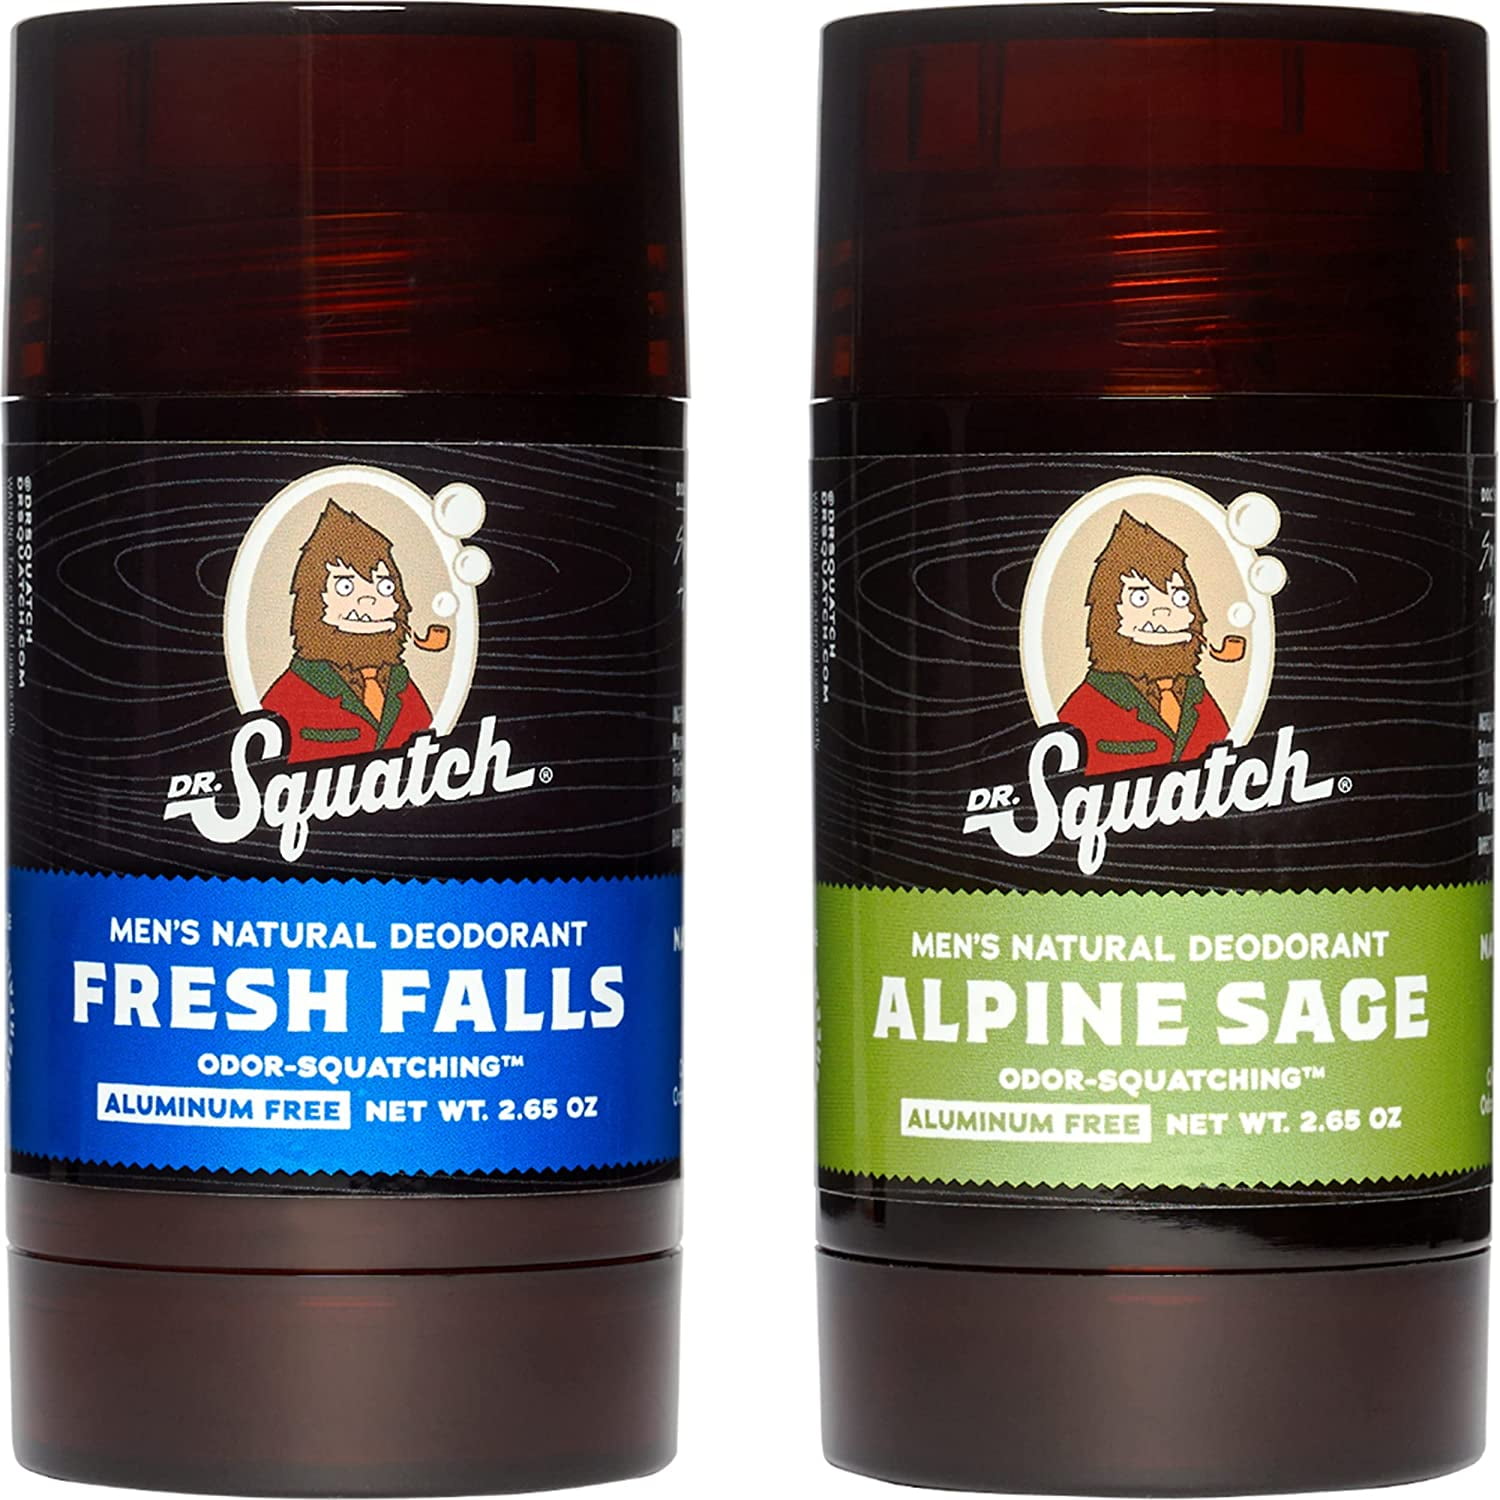 Dr. Squatch Natural Deodorant for Men Odor-Squatching Men's Deodorant  Aluminum Free - Alpine Sage + Fresh Falls (2.65 oz, 2 Pack)